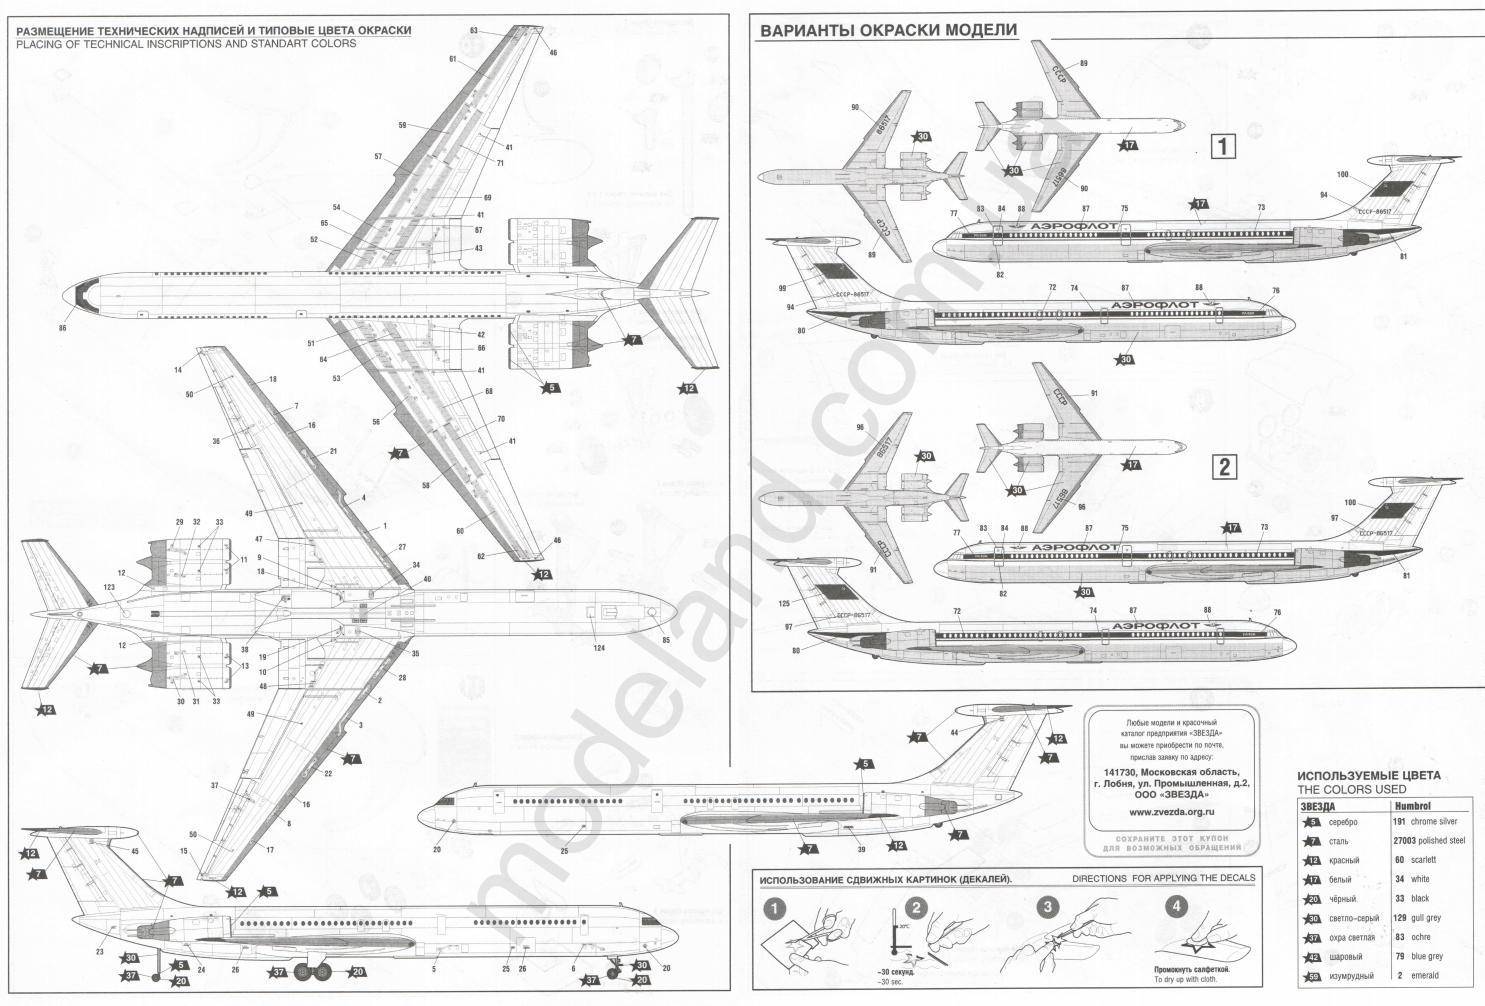 Самолет ил-62: фото, технические характеристики